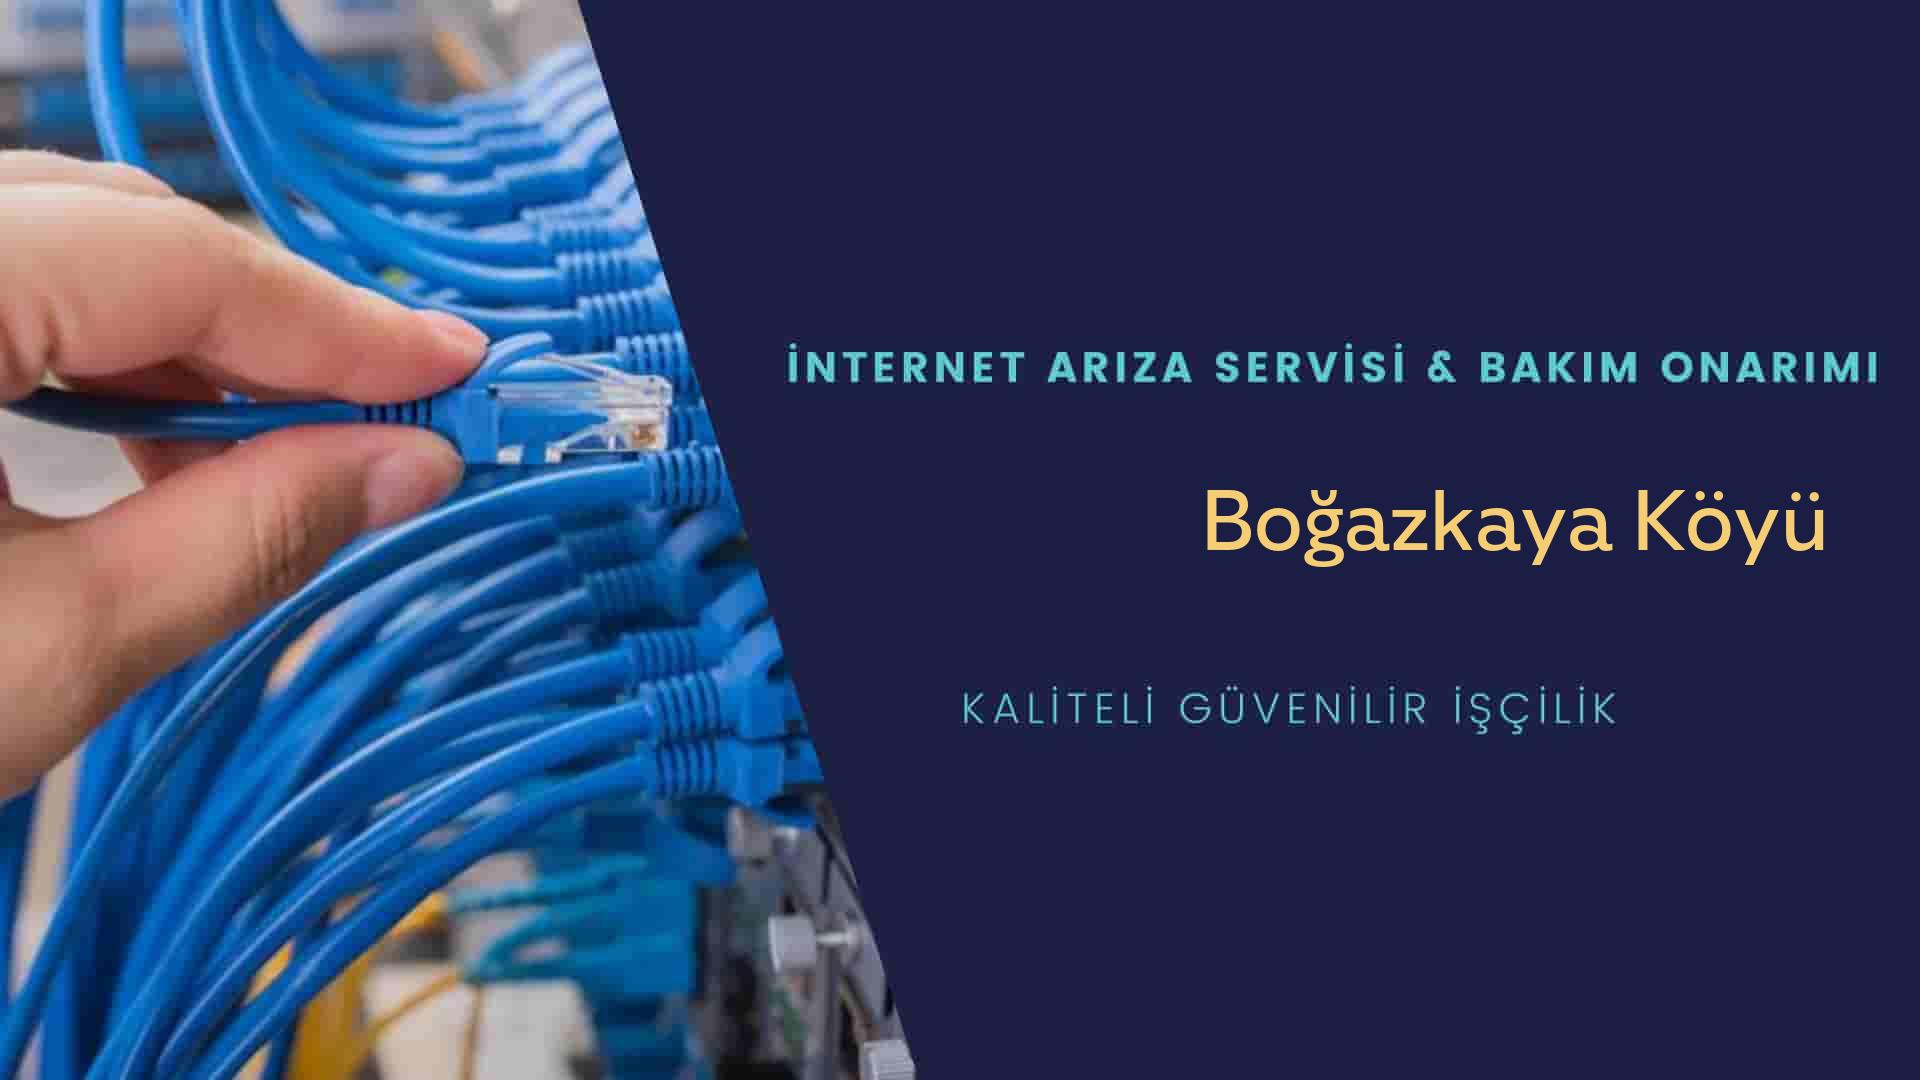 Boğazkaya Köyü internet kablosu çekimi yapan yerler veya elektrikçiler mi? arıyorsunuz doğru yerdesiniz o zaman sizlere 7/24 yardımcı olacak profesyonel ustalarımız bir telefon kadar yakındır size.